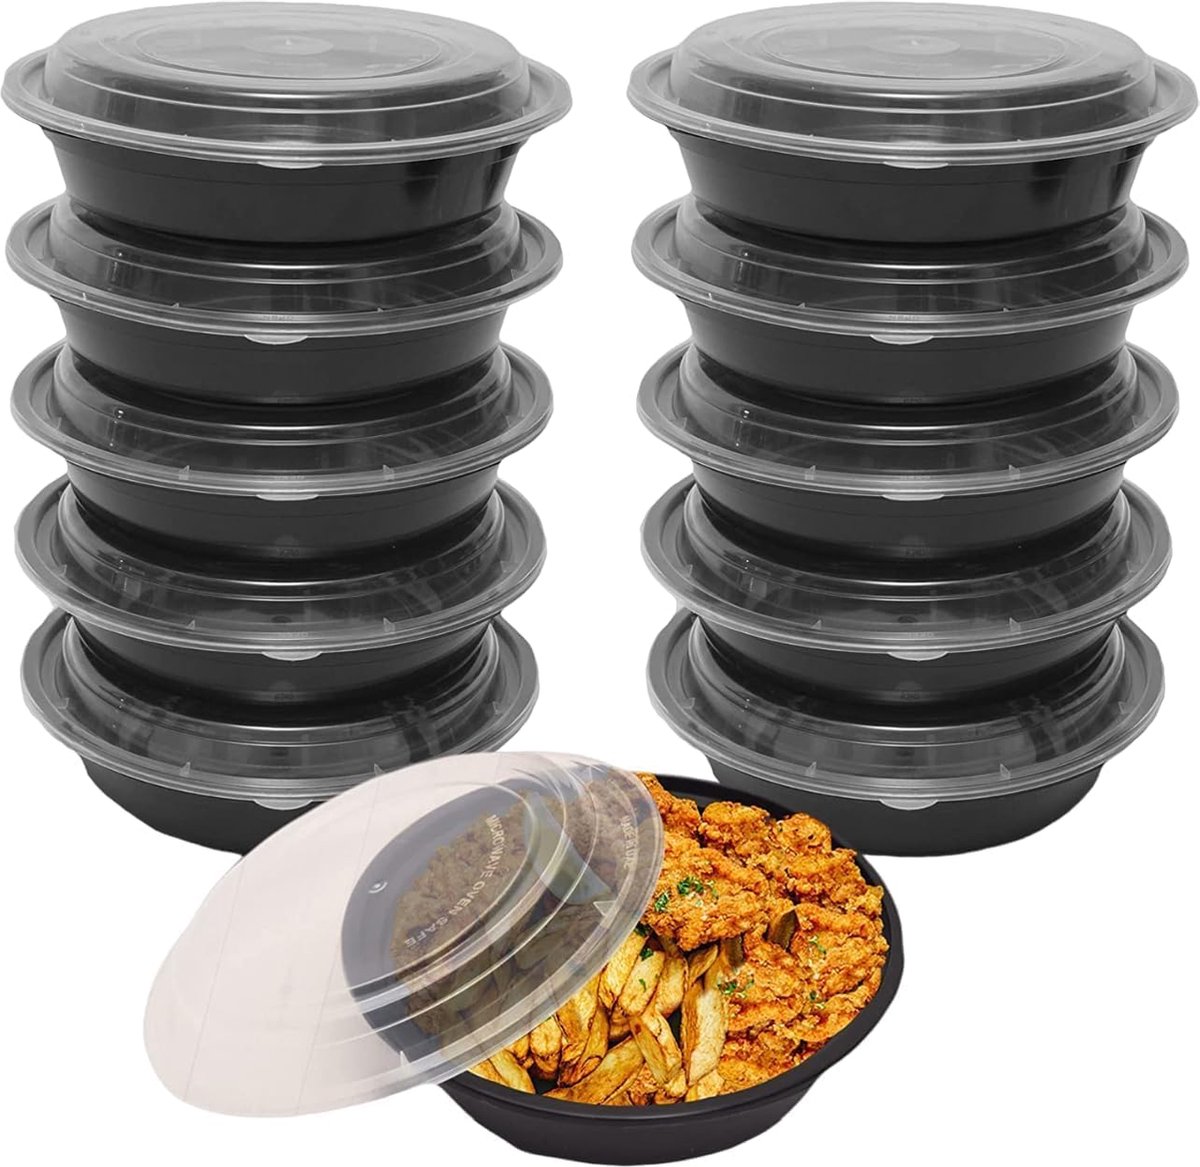 FUZON Ronde plastic maaltijdbereidingscontainers - Herbruikbare BPA-vrije voedselcontainers met luchtdichte deksels - Magnetronbestendig, vriezer en vaatwasserbestendig. (10 stuks, 473ML).